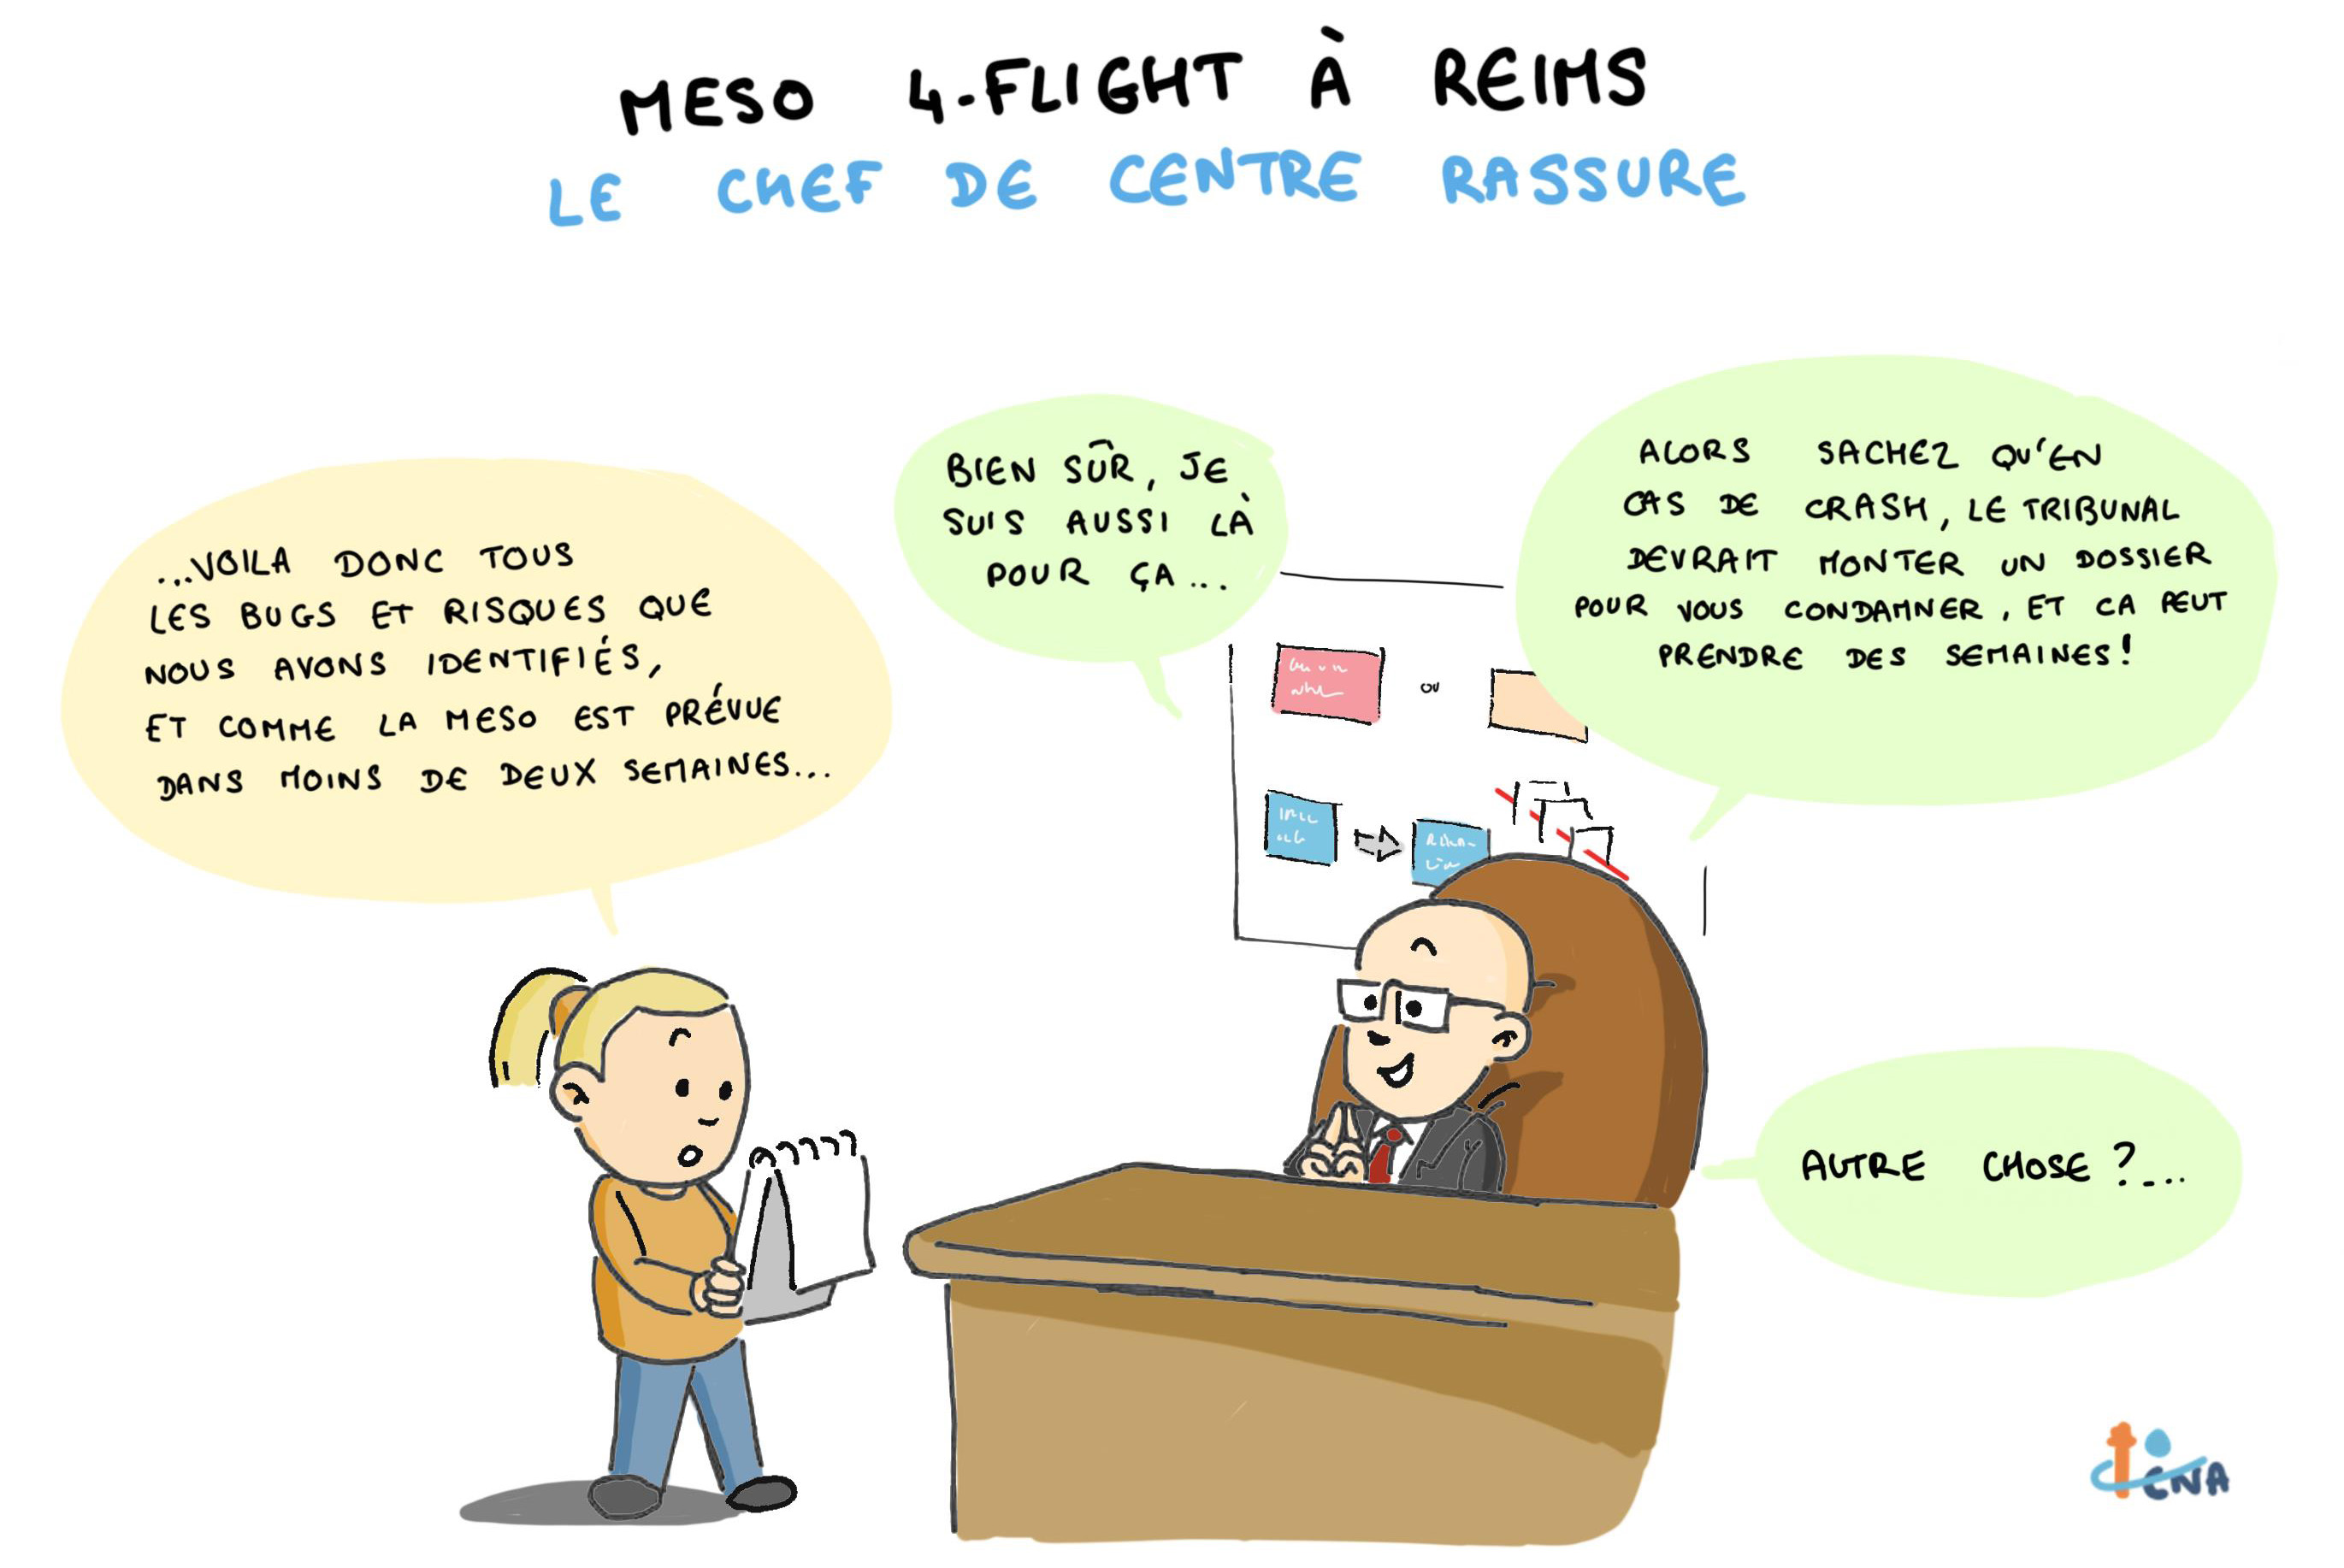 MESO 4-Flight à Reims, le chef de centre rassure